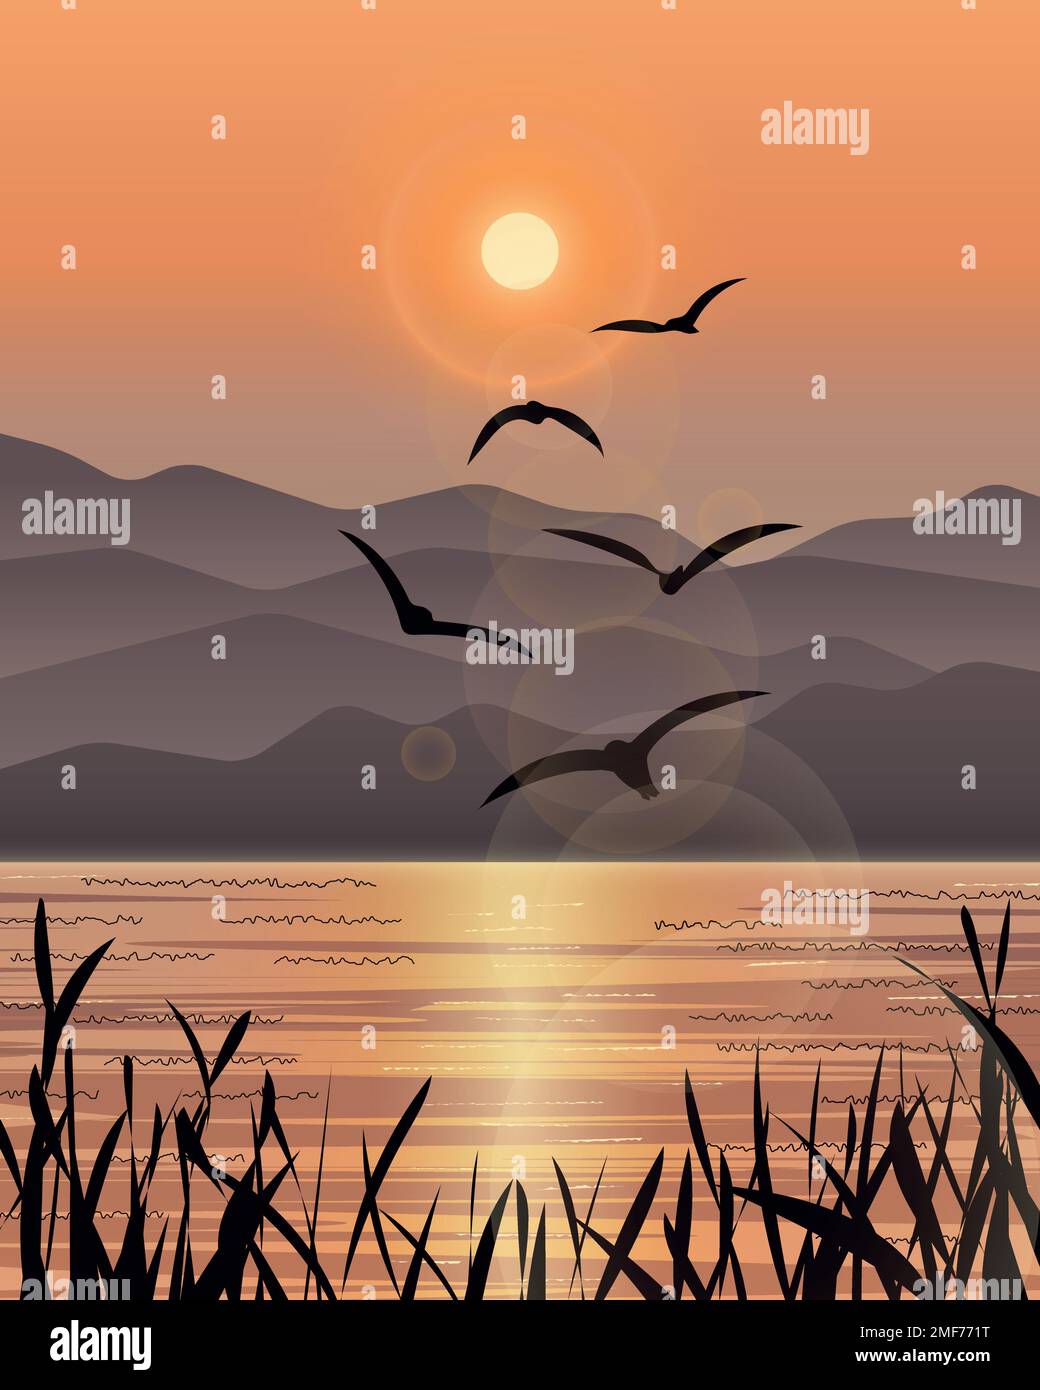 Seascape-Illustration mit der Schar von Möwen, die im Hintergrund bei Sonnenuntergang fliegen, und der Silhouette von Schilf im Vordergrund. Stock Vektor